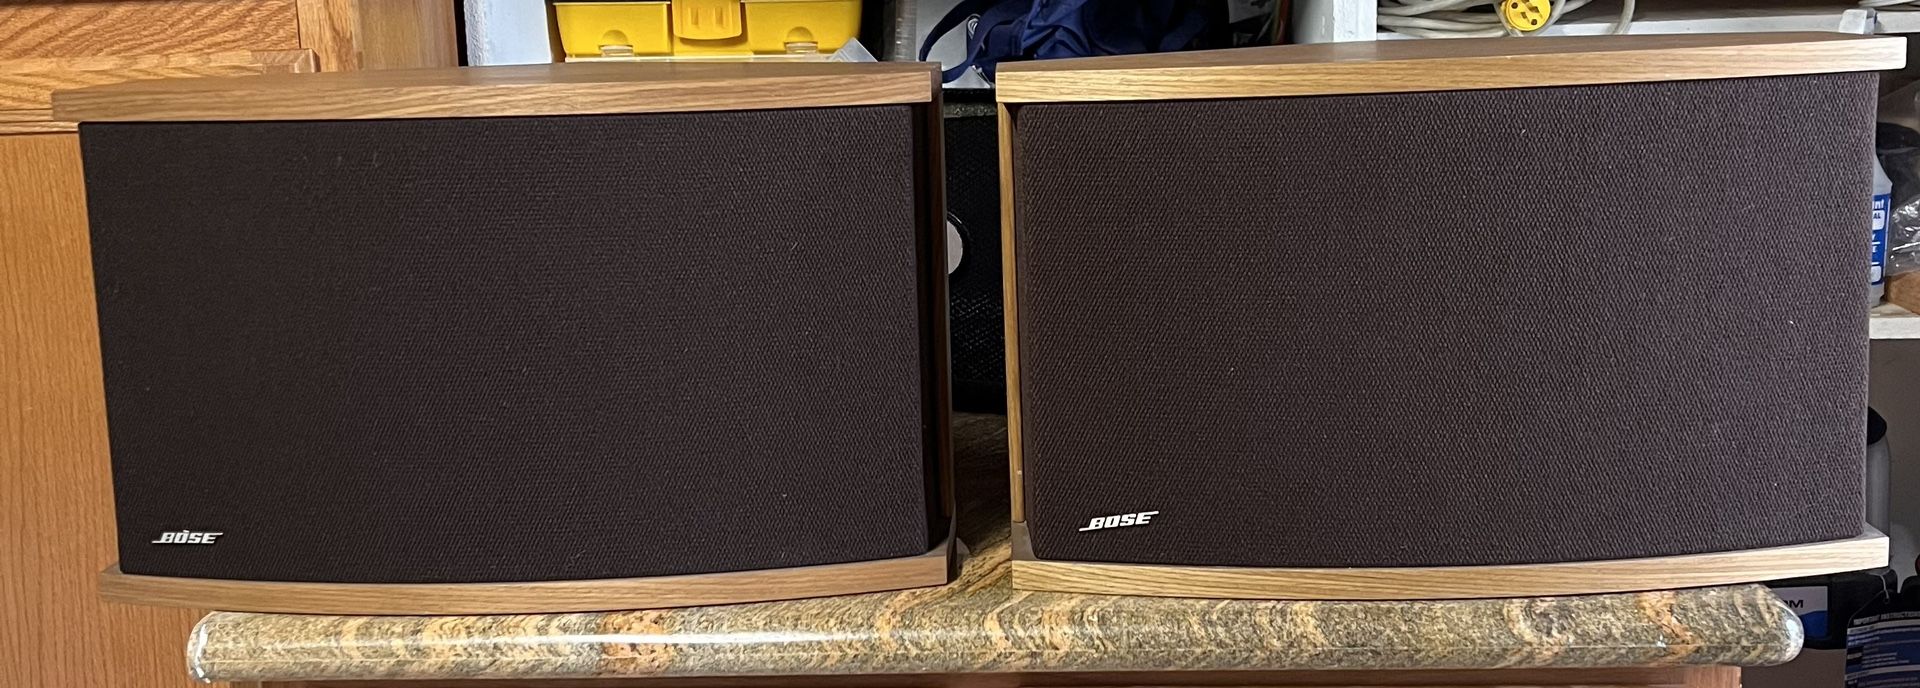 Bose 901 Series VI Speakers